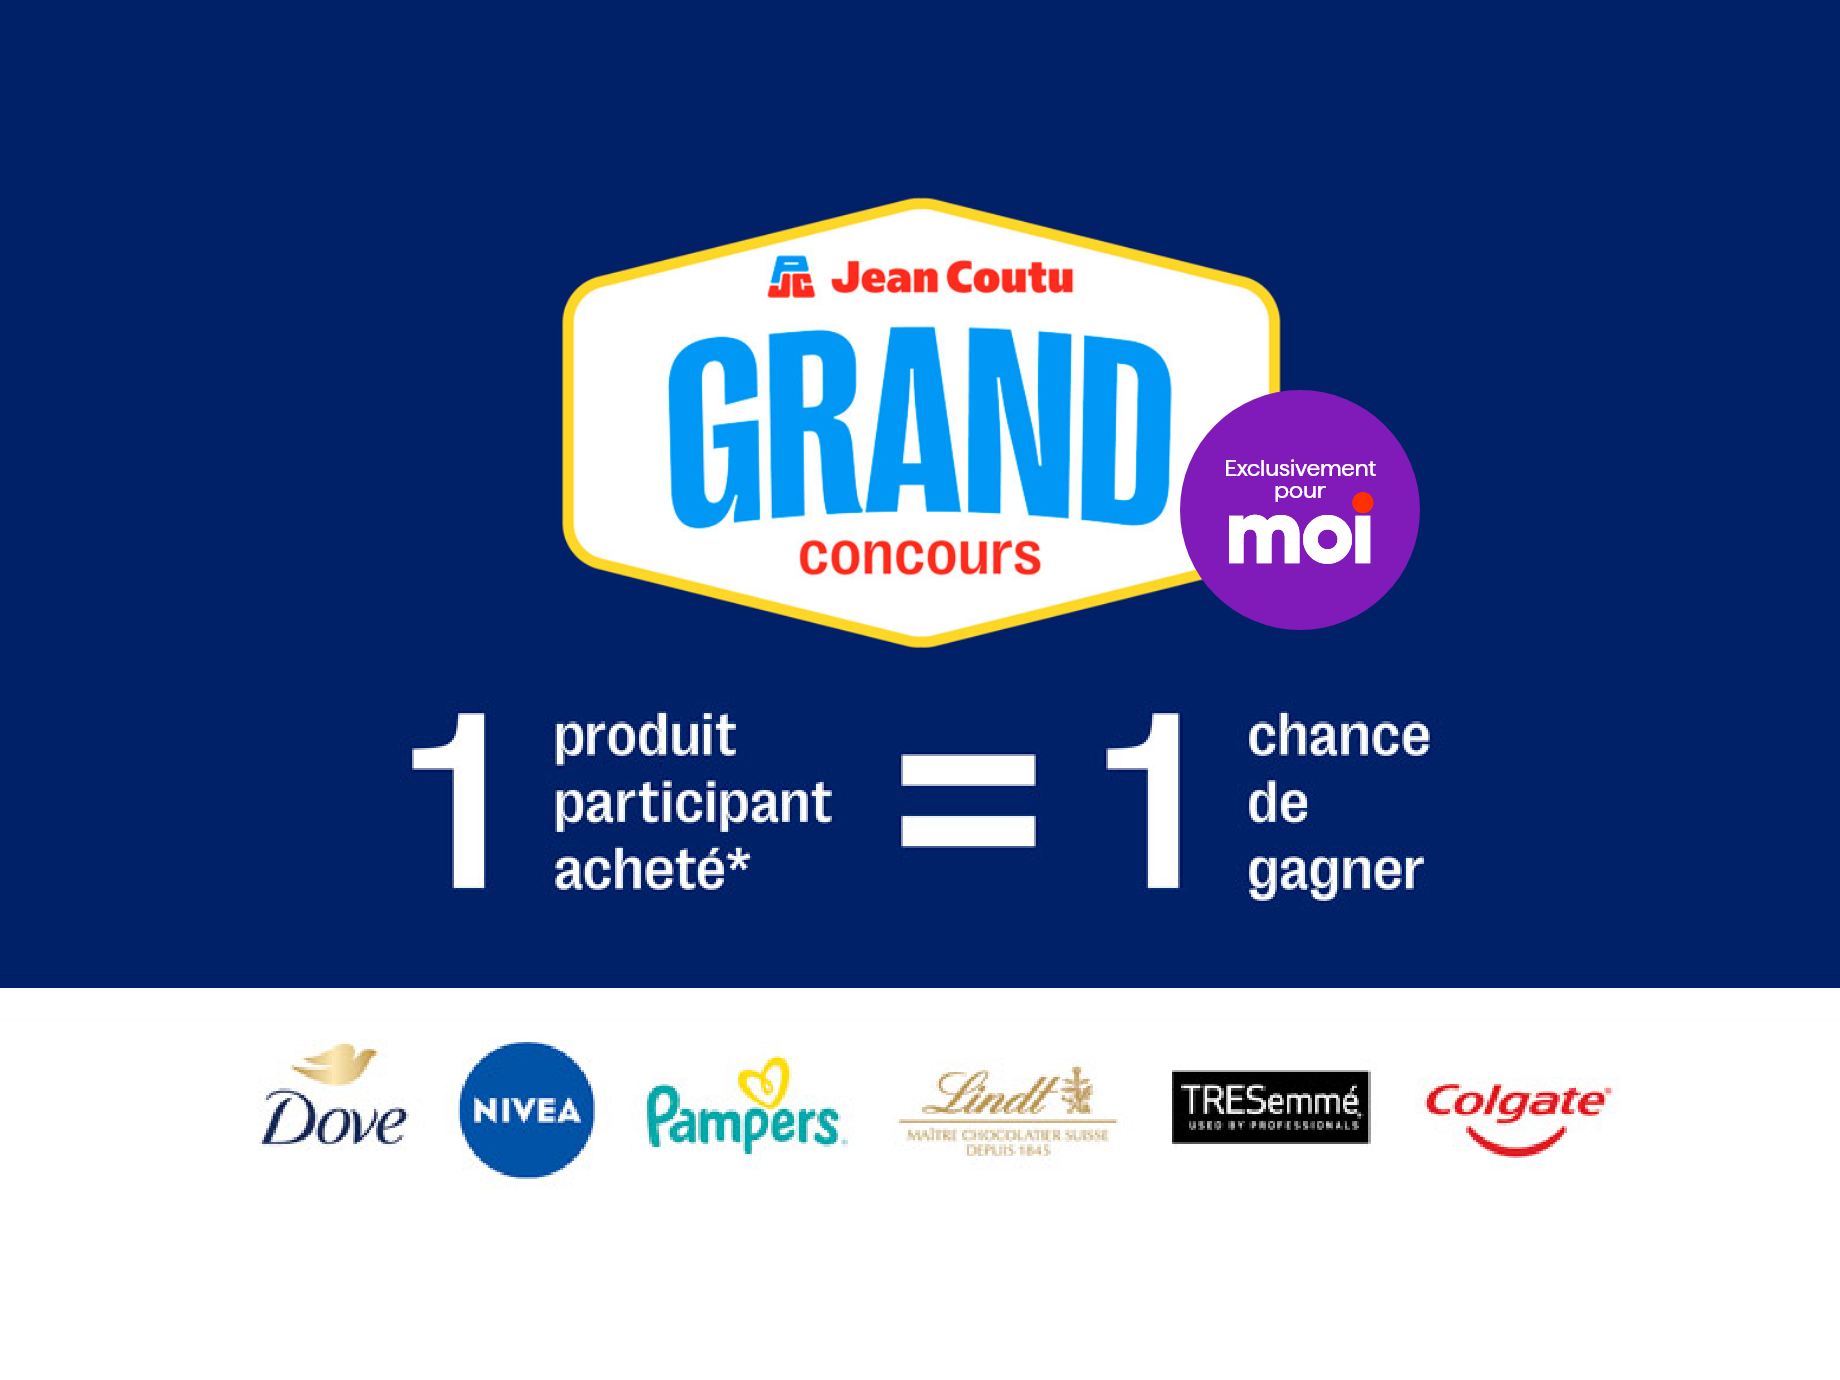 Jean Coutu Grand concours - 1 produit participant achete = 1 chance de gagner